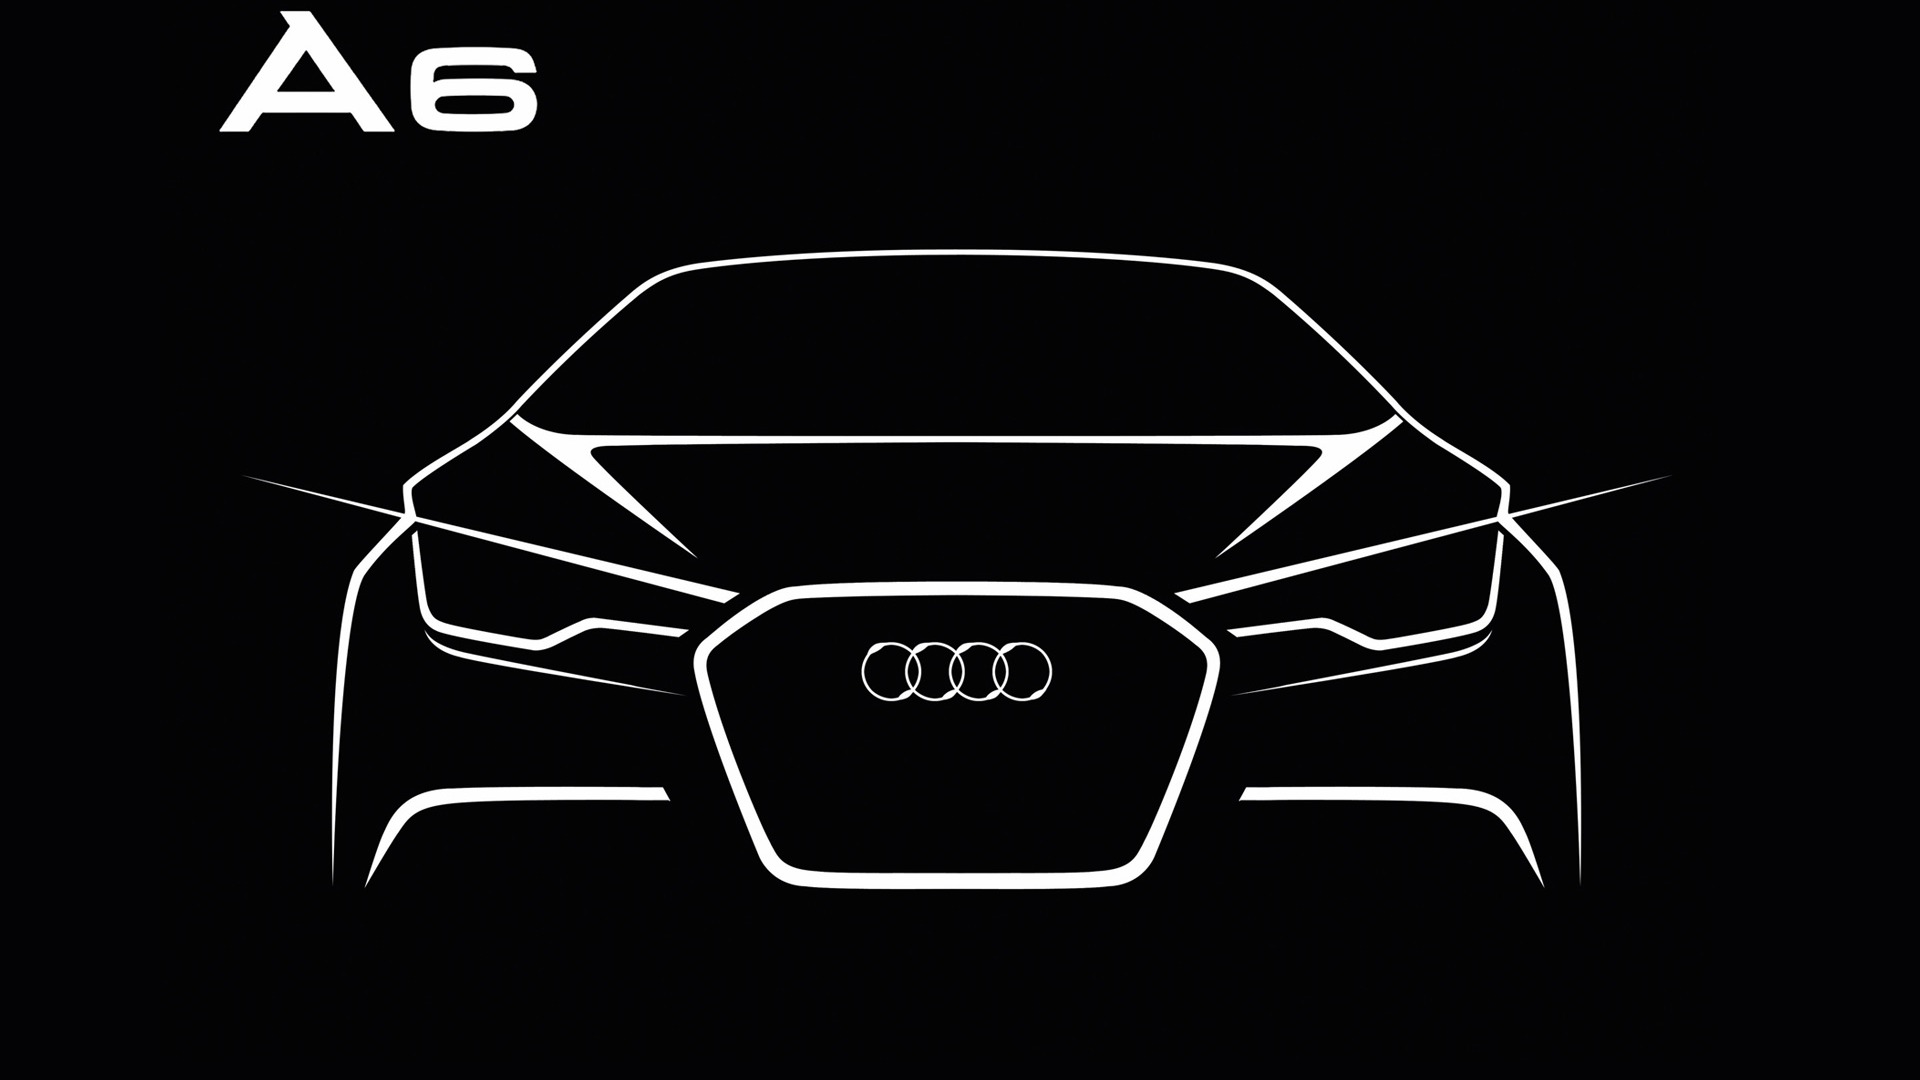 Audi A6 3.0 TDI quattro - 2011 HD Wallpaper #28 - 1920x1080